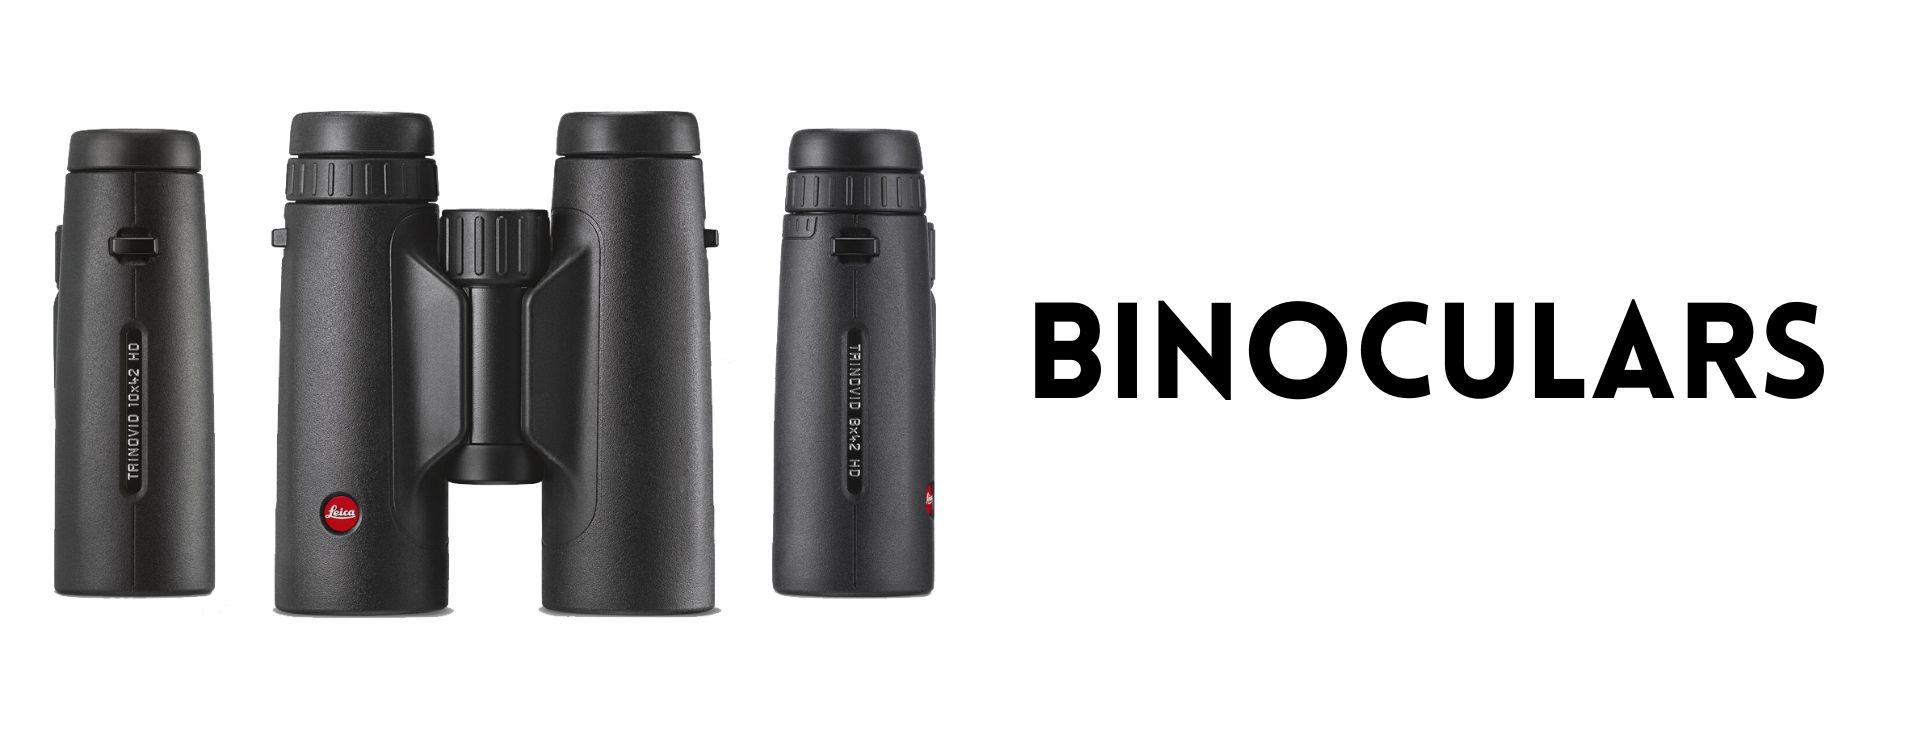 Leica Binoculars at Ace Optics UK